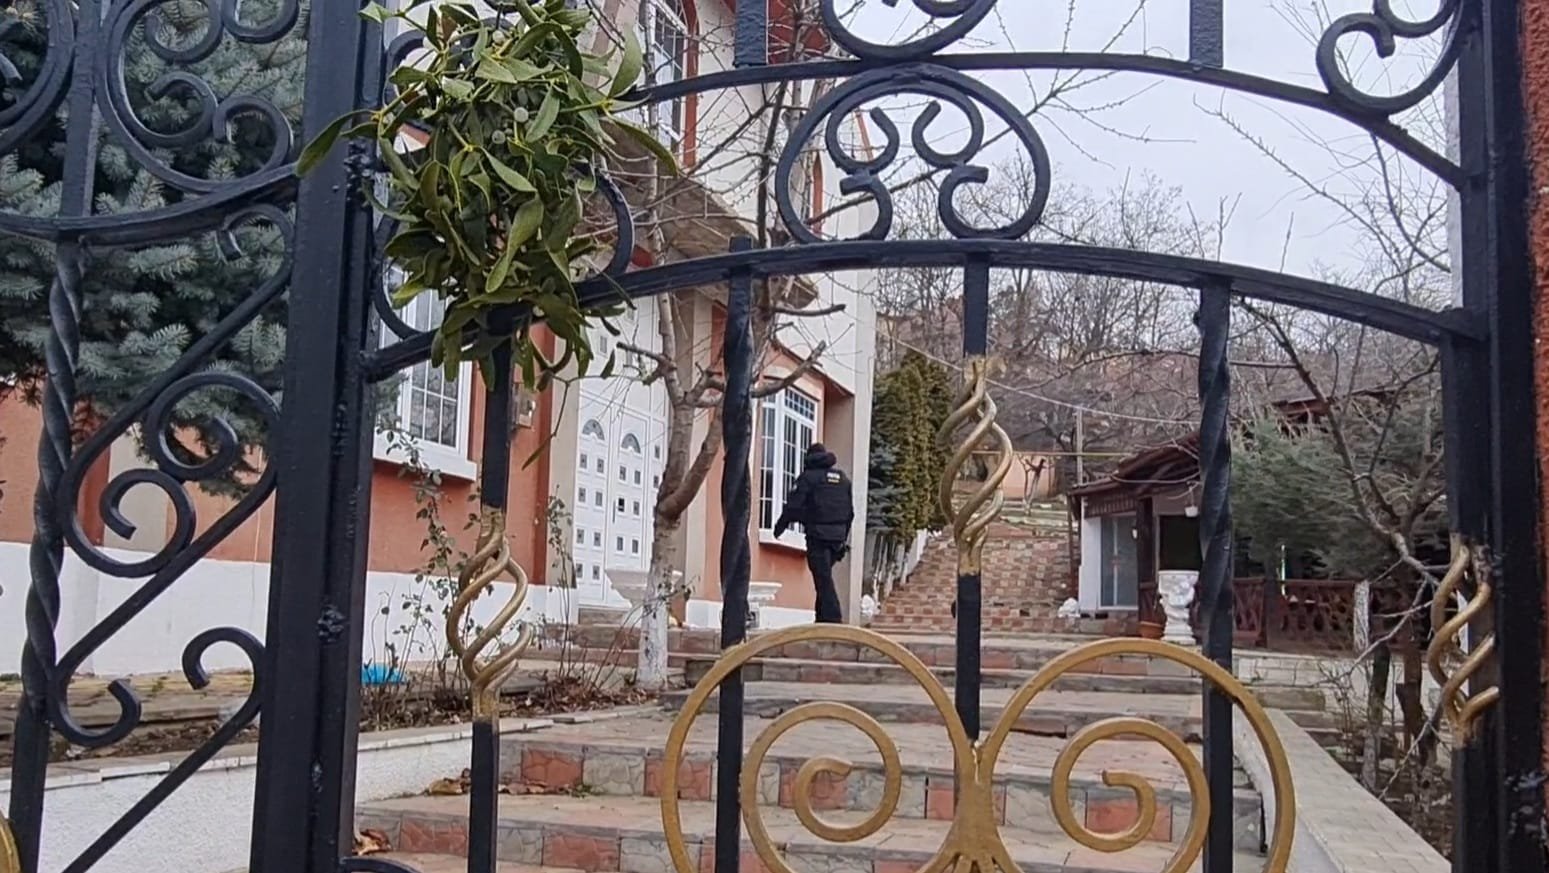  EXCLUSIV! Percheziții în lumea interlopă din Iași! Vila clanului Tănase, răscolită – FOTO/VIDEO